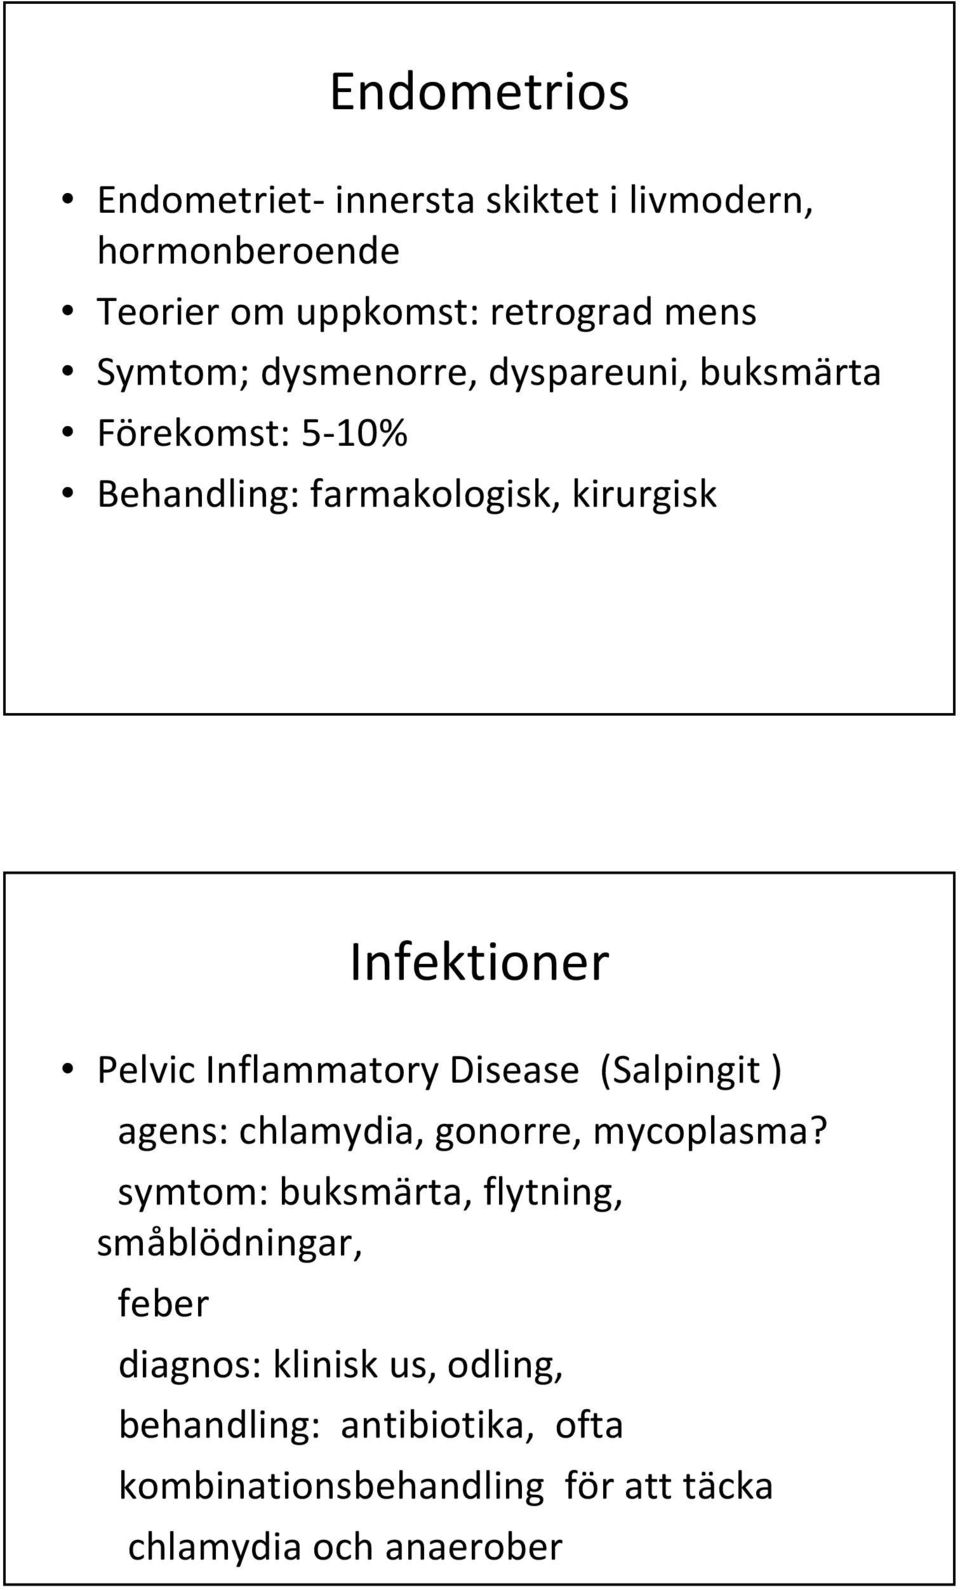 Inflammatory Disease (Salpingit ) agens: chlamydia, gonorre, mycoplasma?